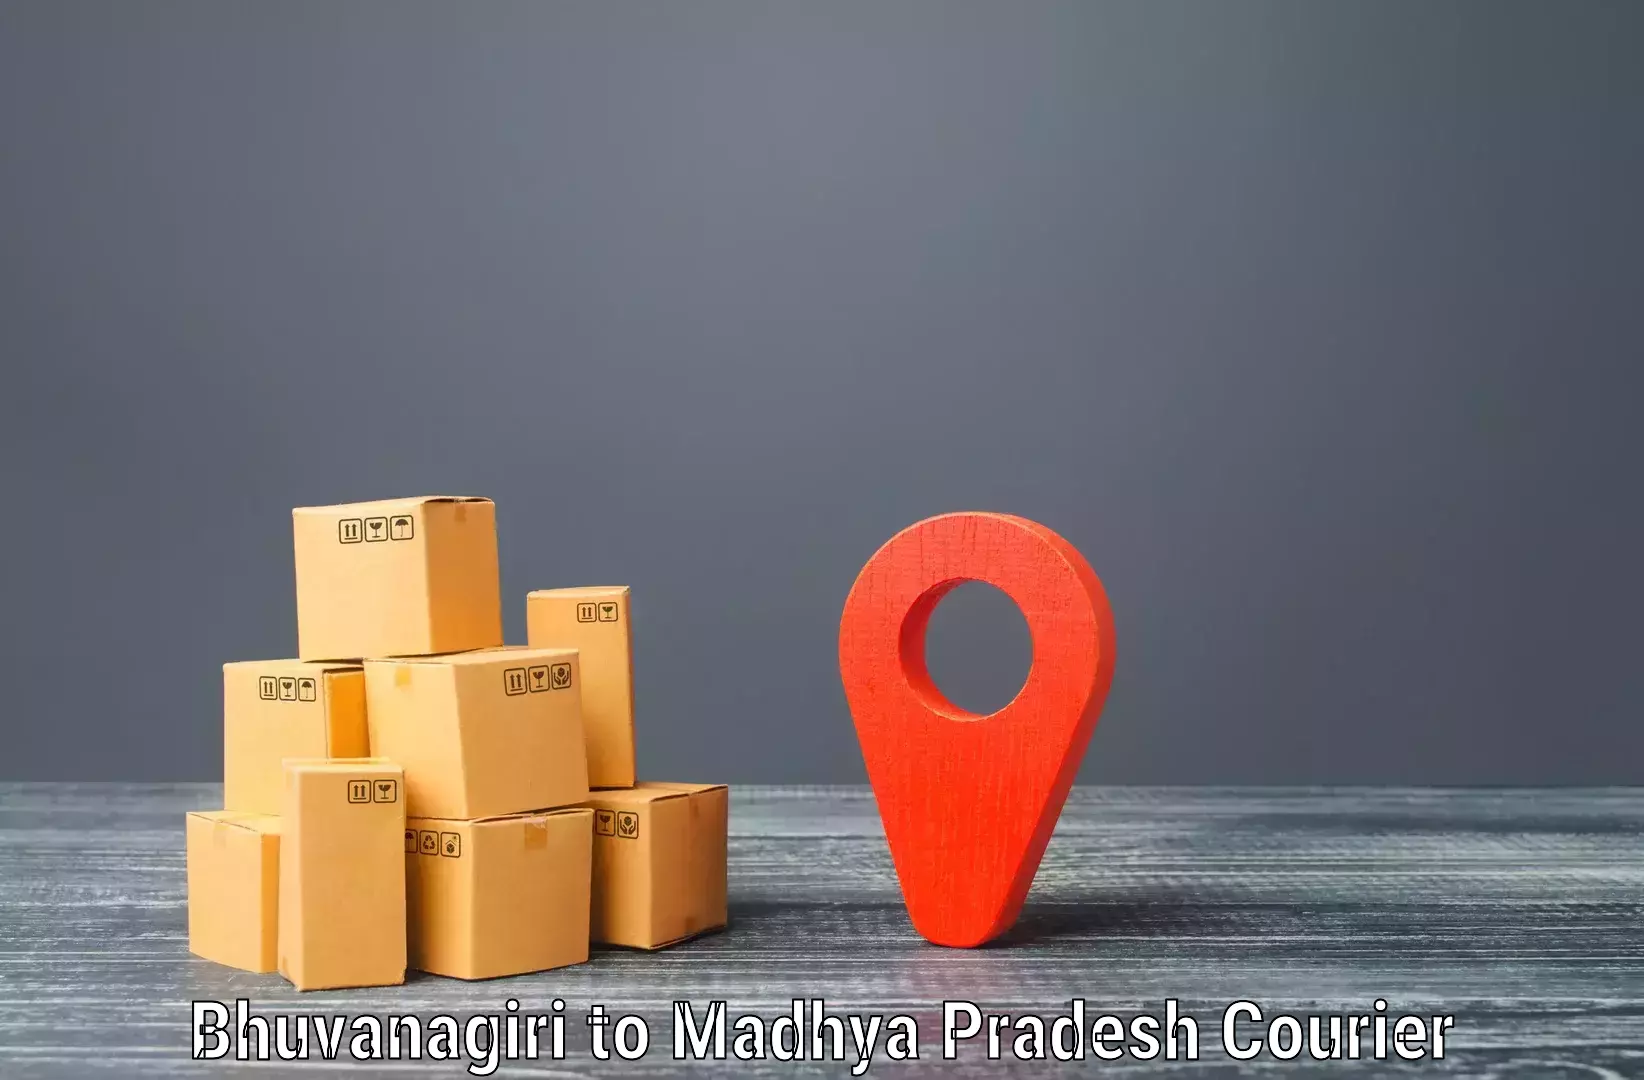 Urban courier service Bhuvanagiri to Panna